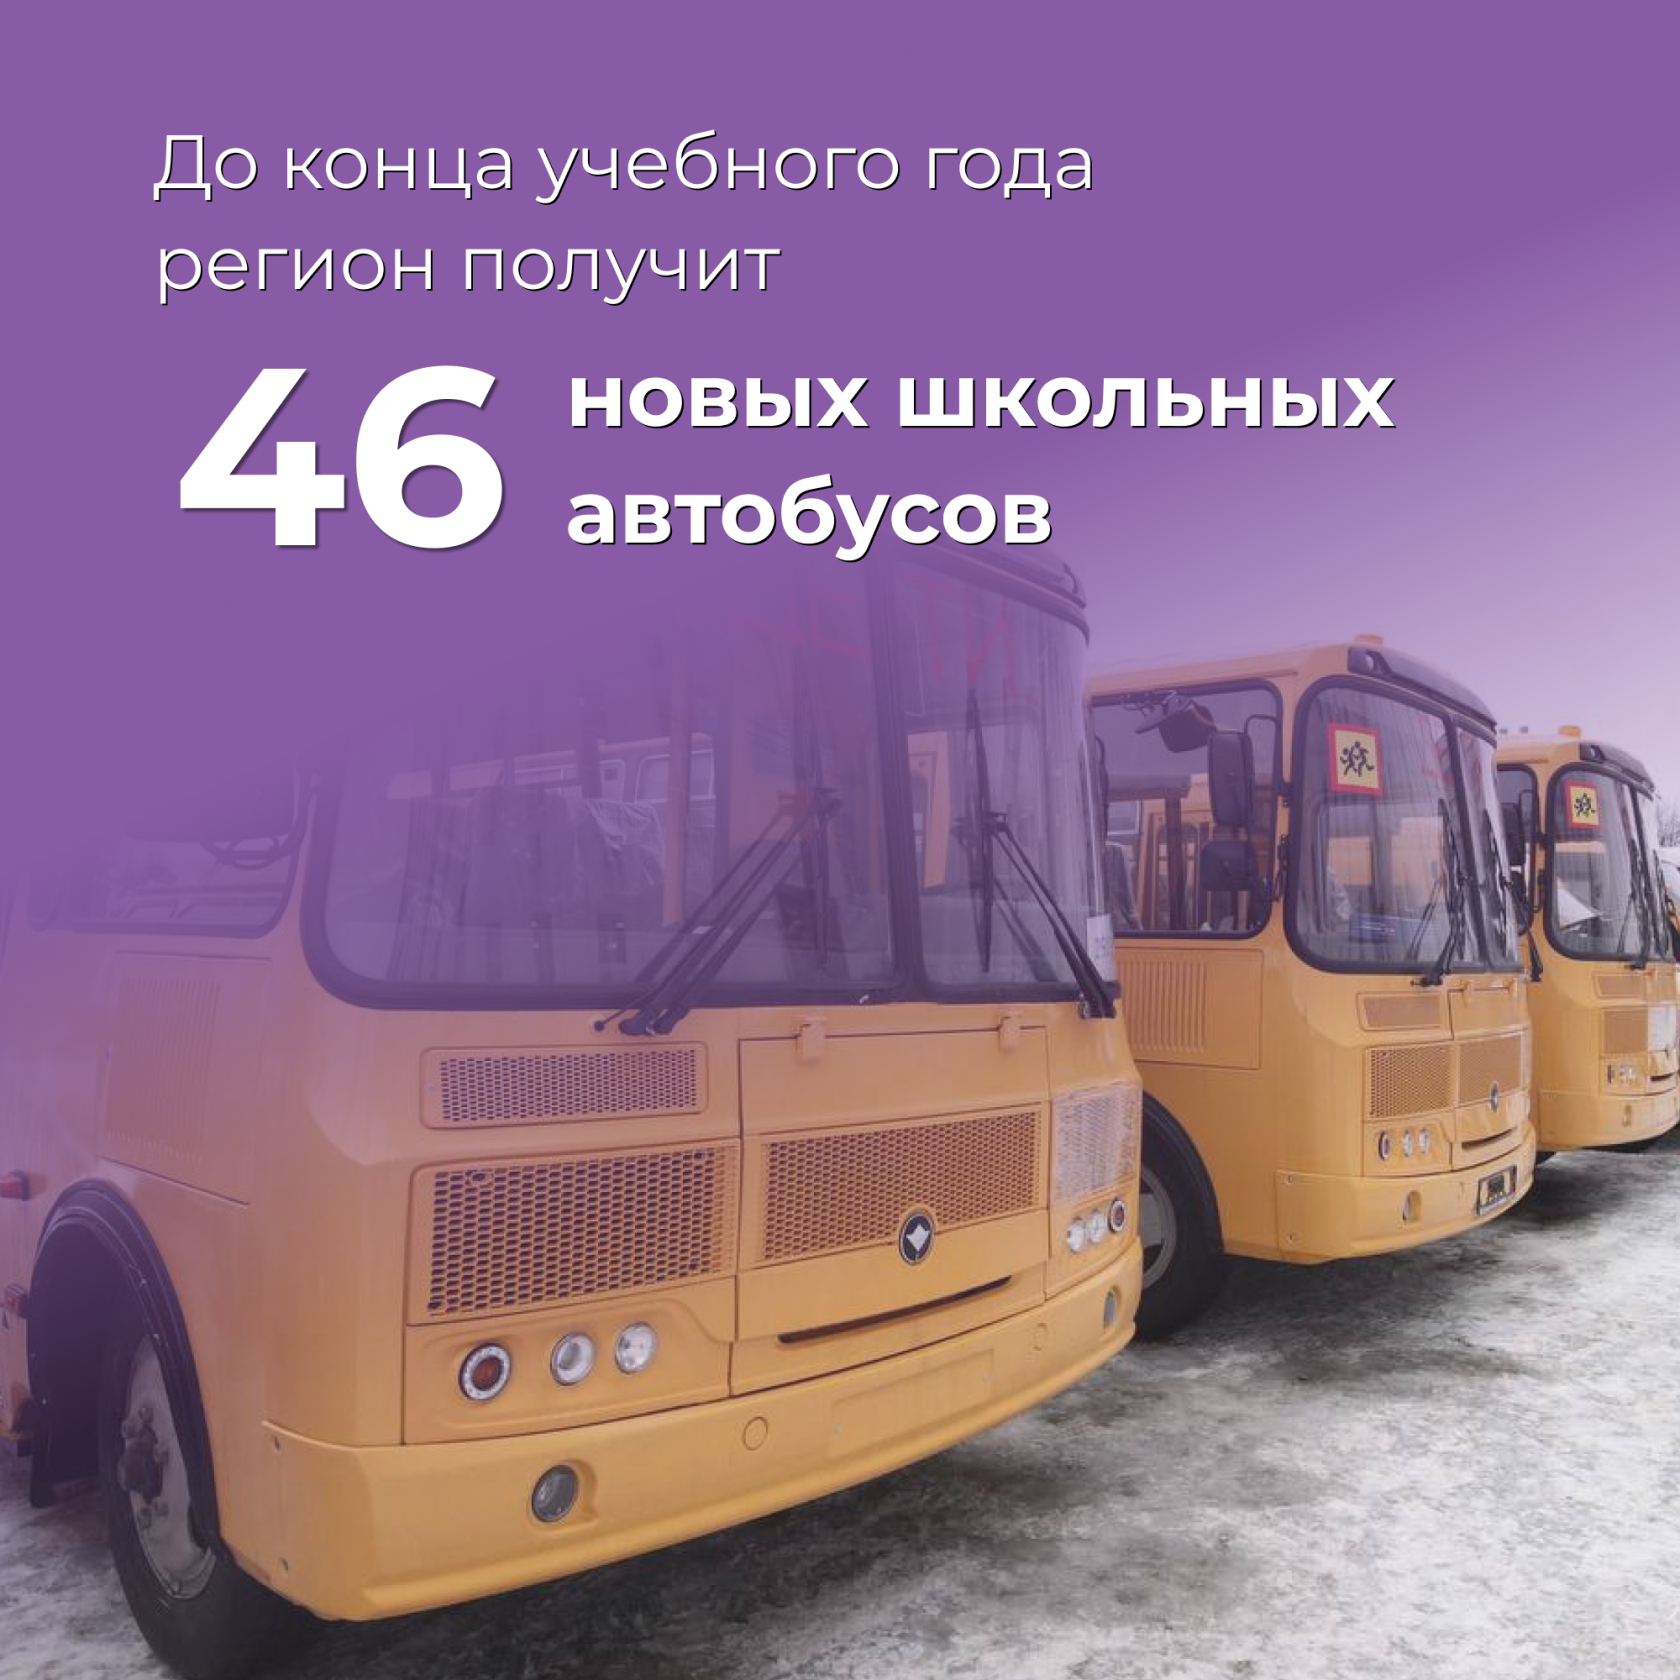 До конца учебного года регион получит 46 новых школьных автобусов.